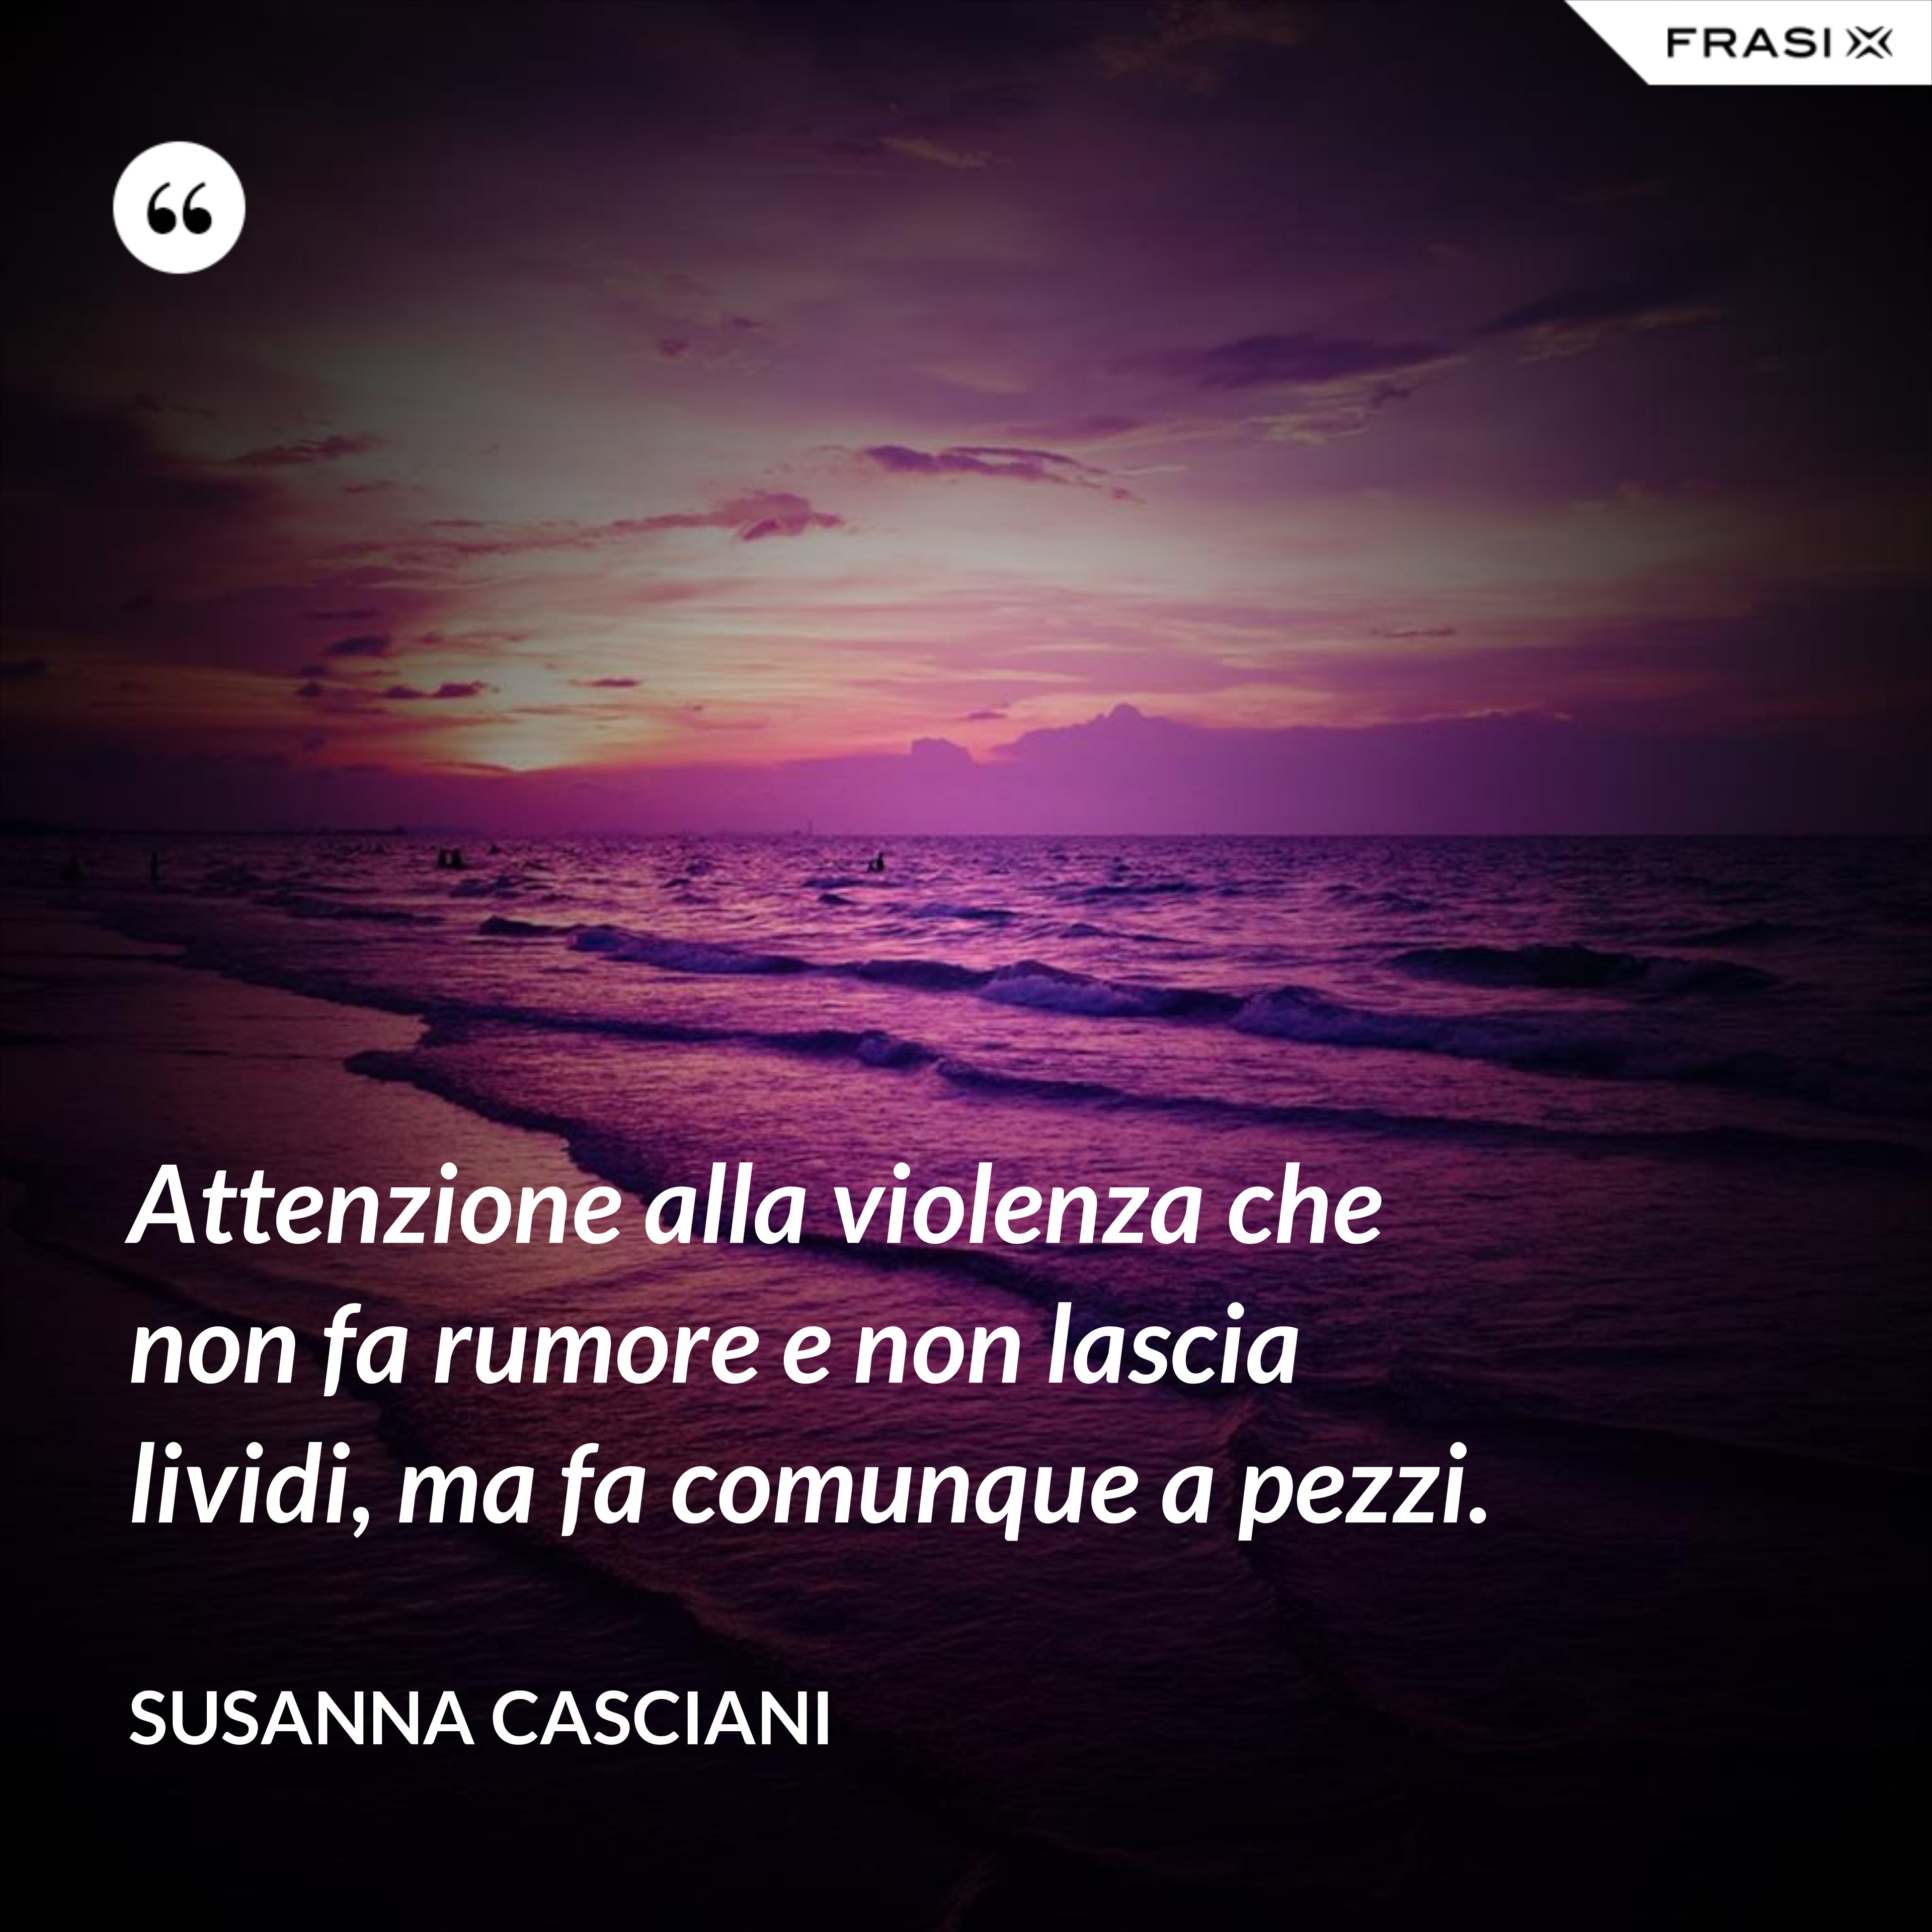 Attenzione alla violenza che non fa rumore e non lascia lividi, ma fa comunque a pezzi. - Susanna Casciani